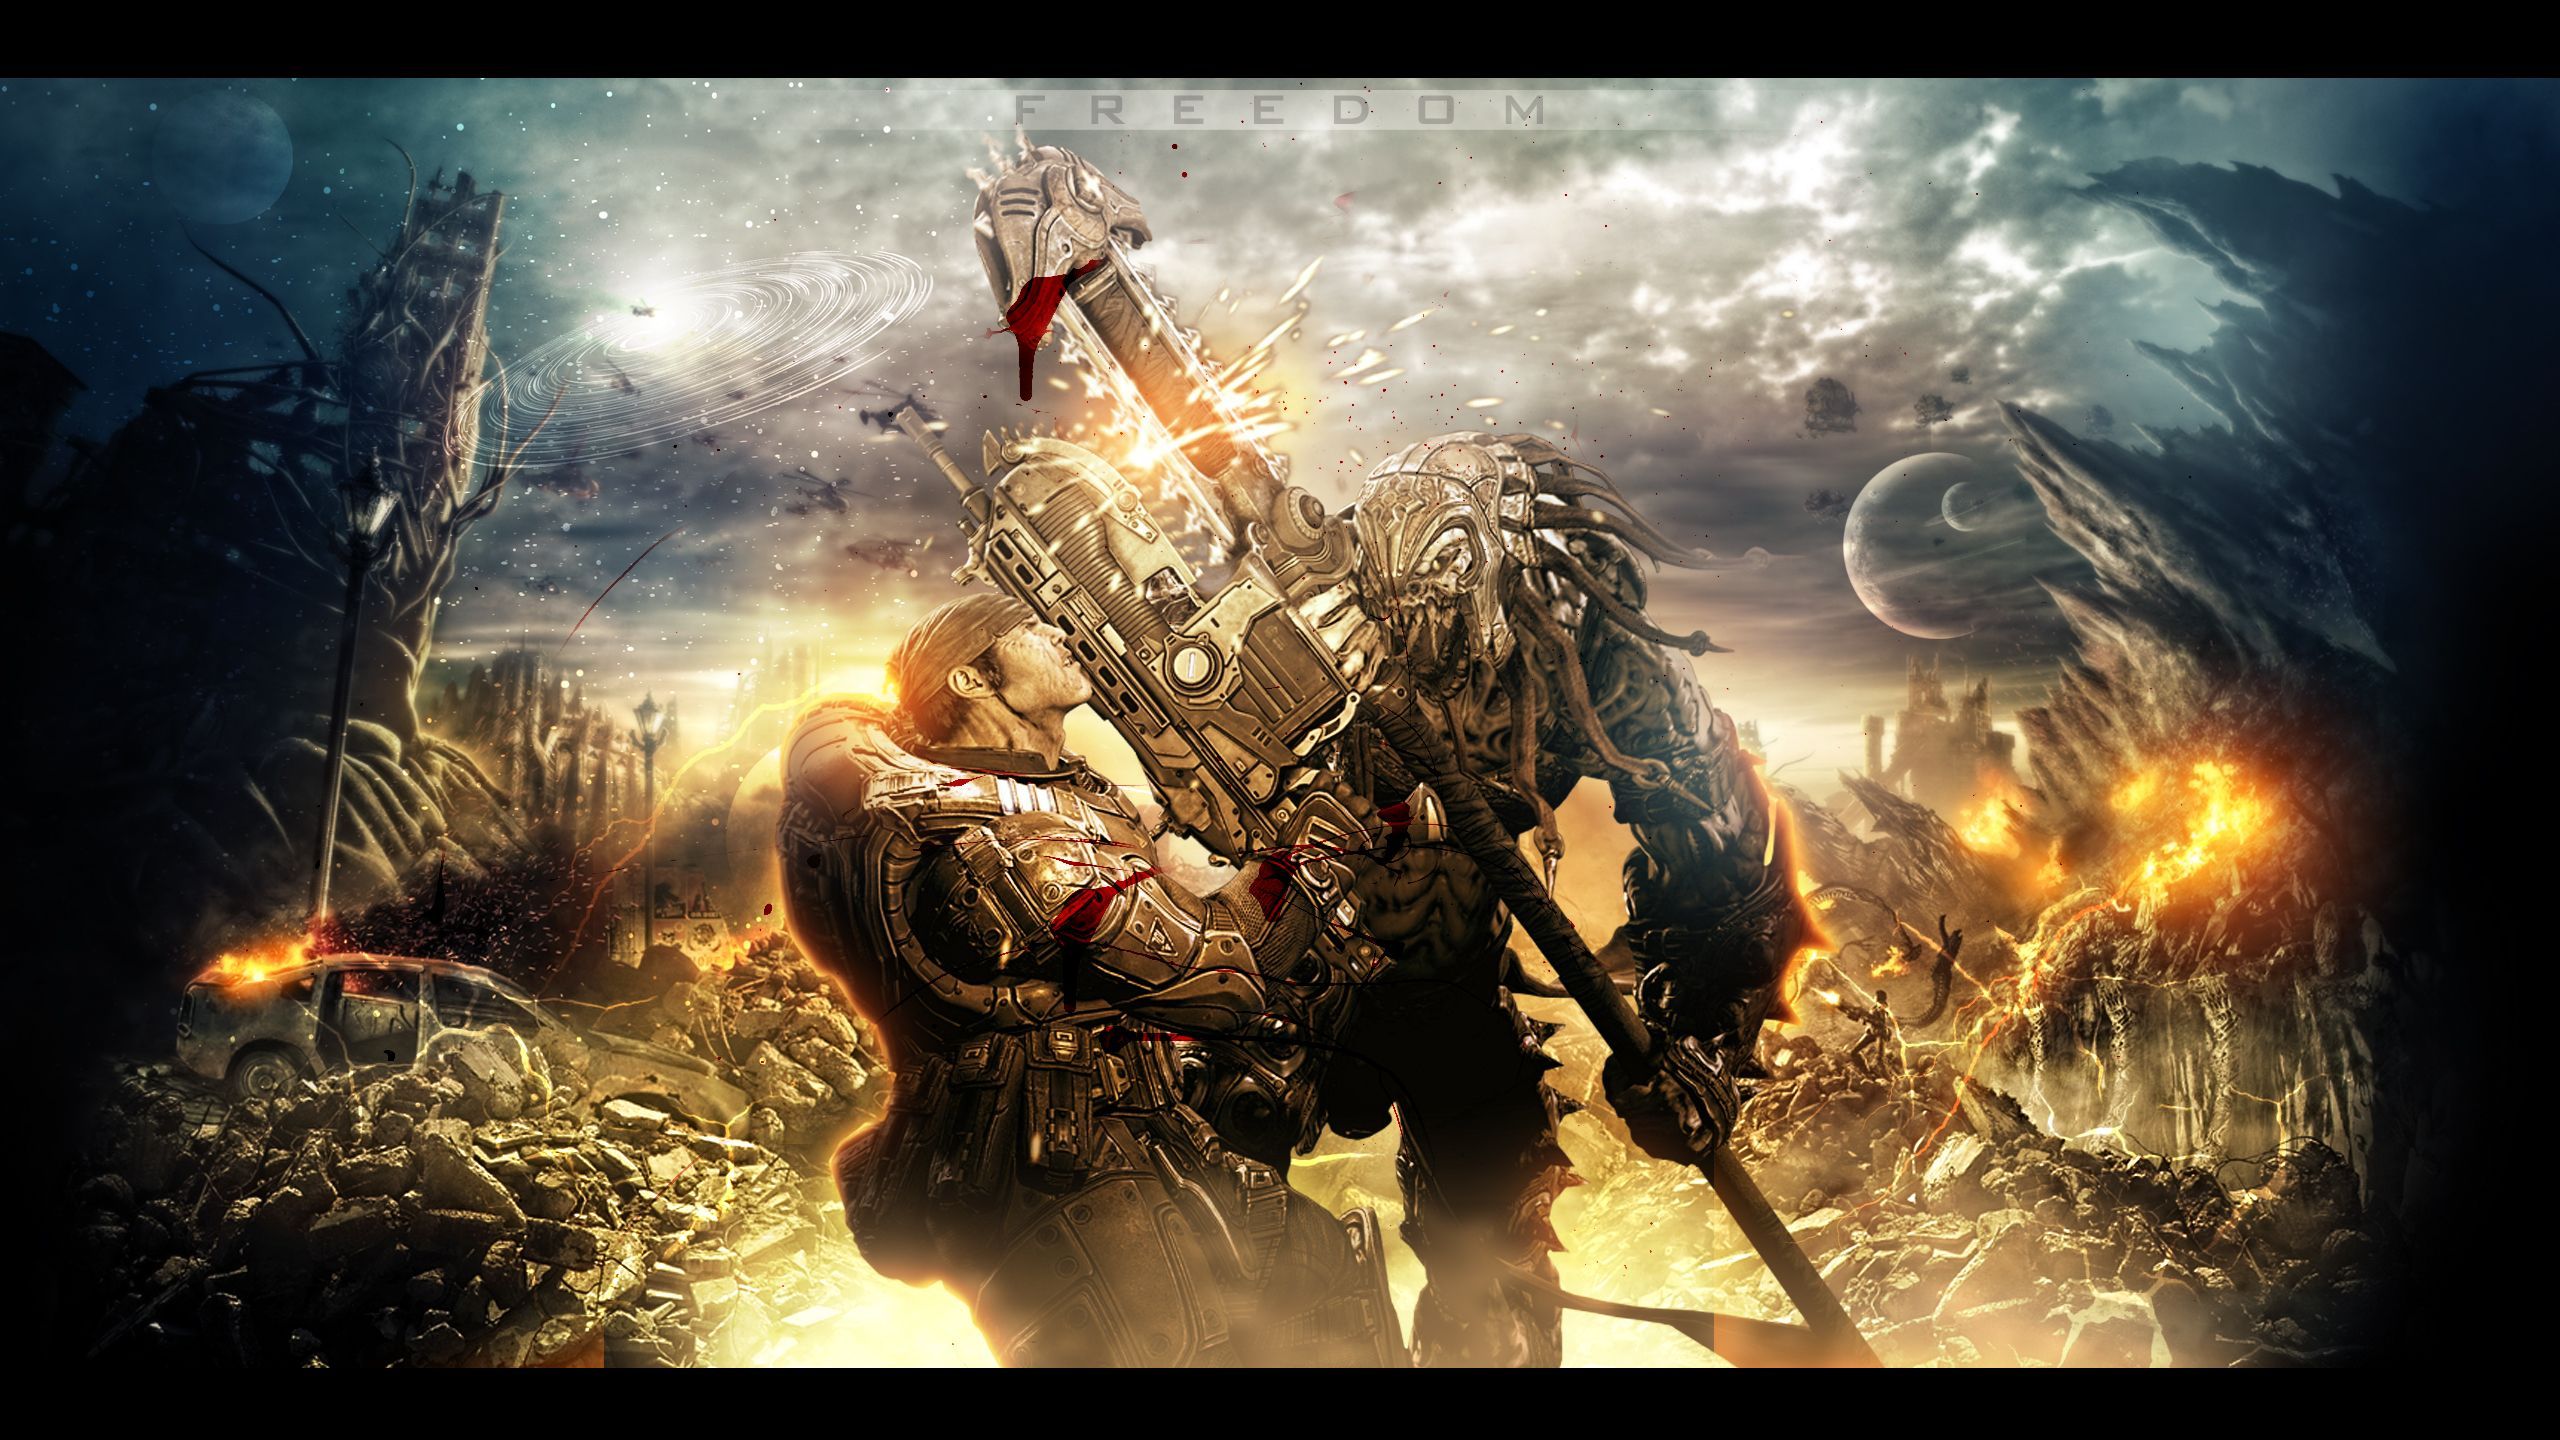 Gears-of-War-3-Freedom-HD-Wallpaper.jpg